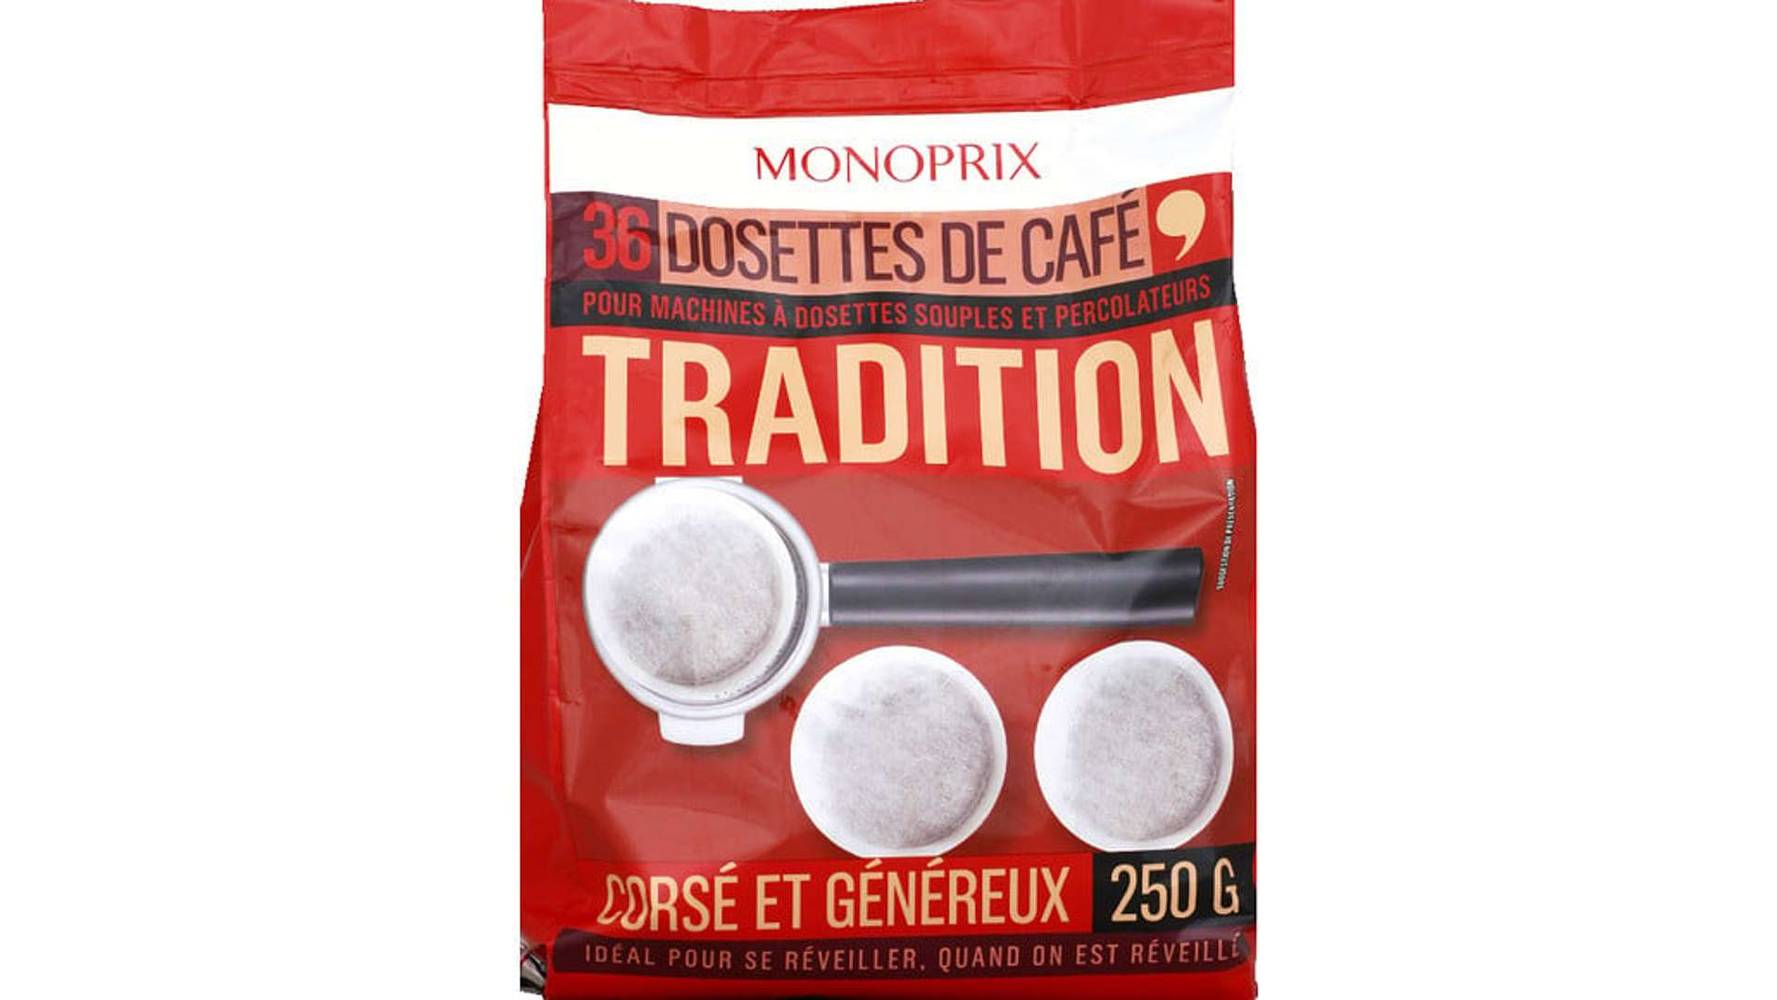 Monoprix Dosettes de café Tradition corsé et généreux Le paquet de 36 - 250 g